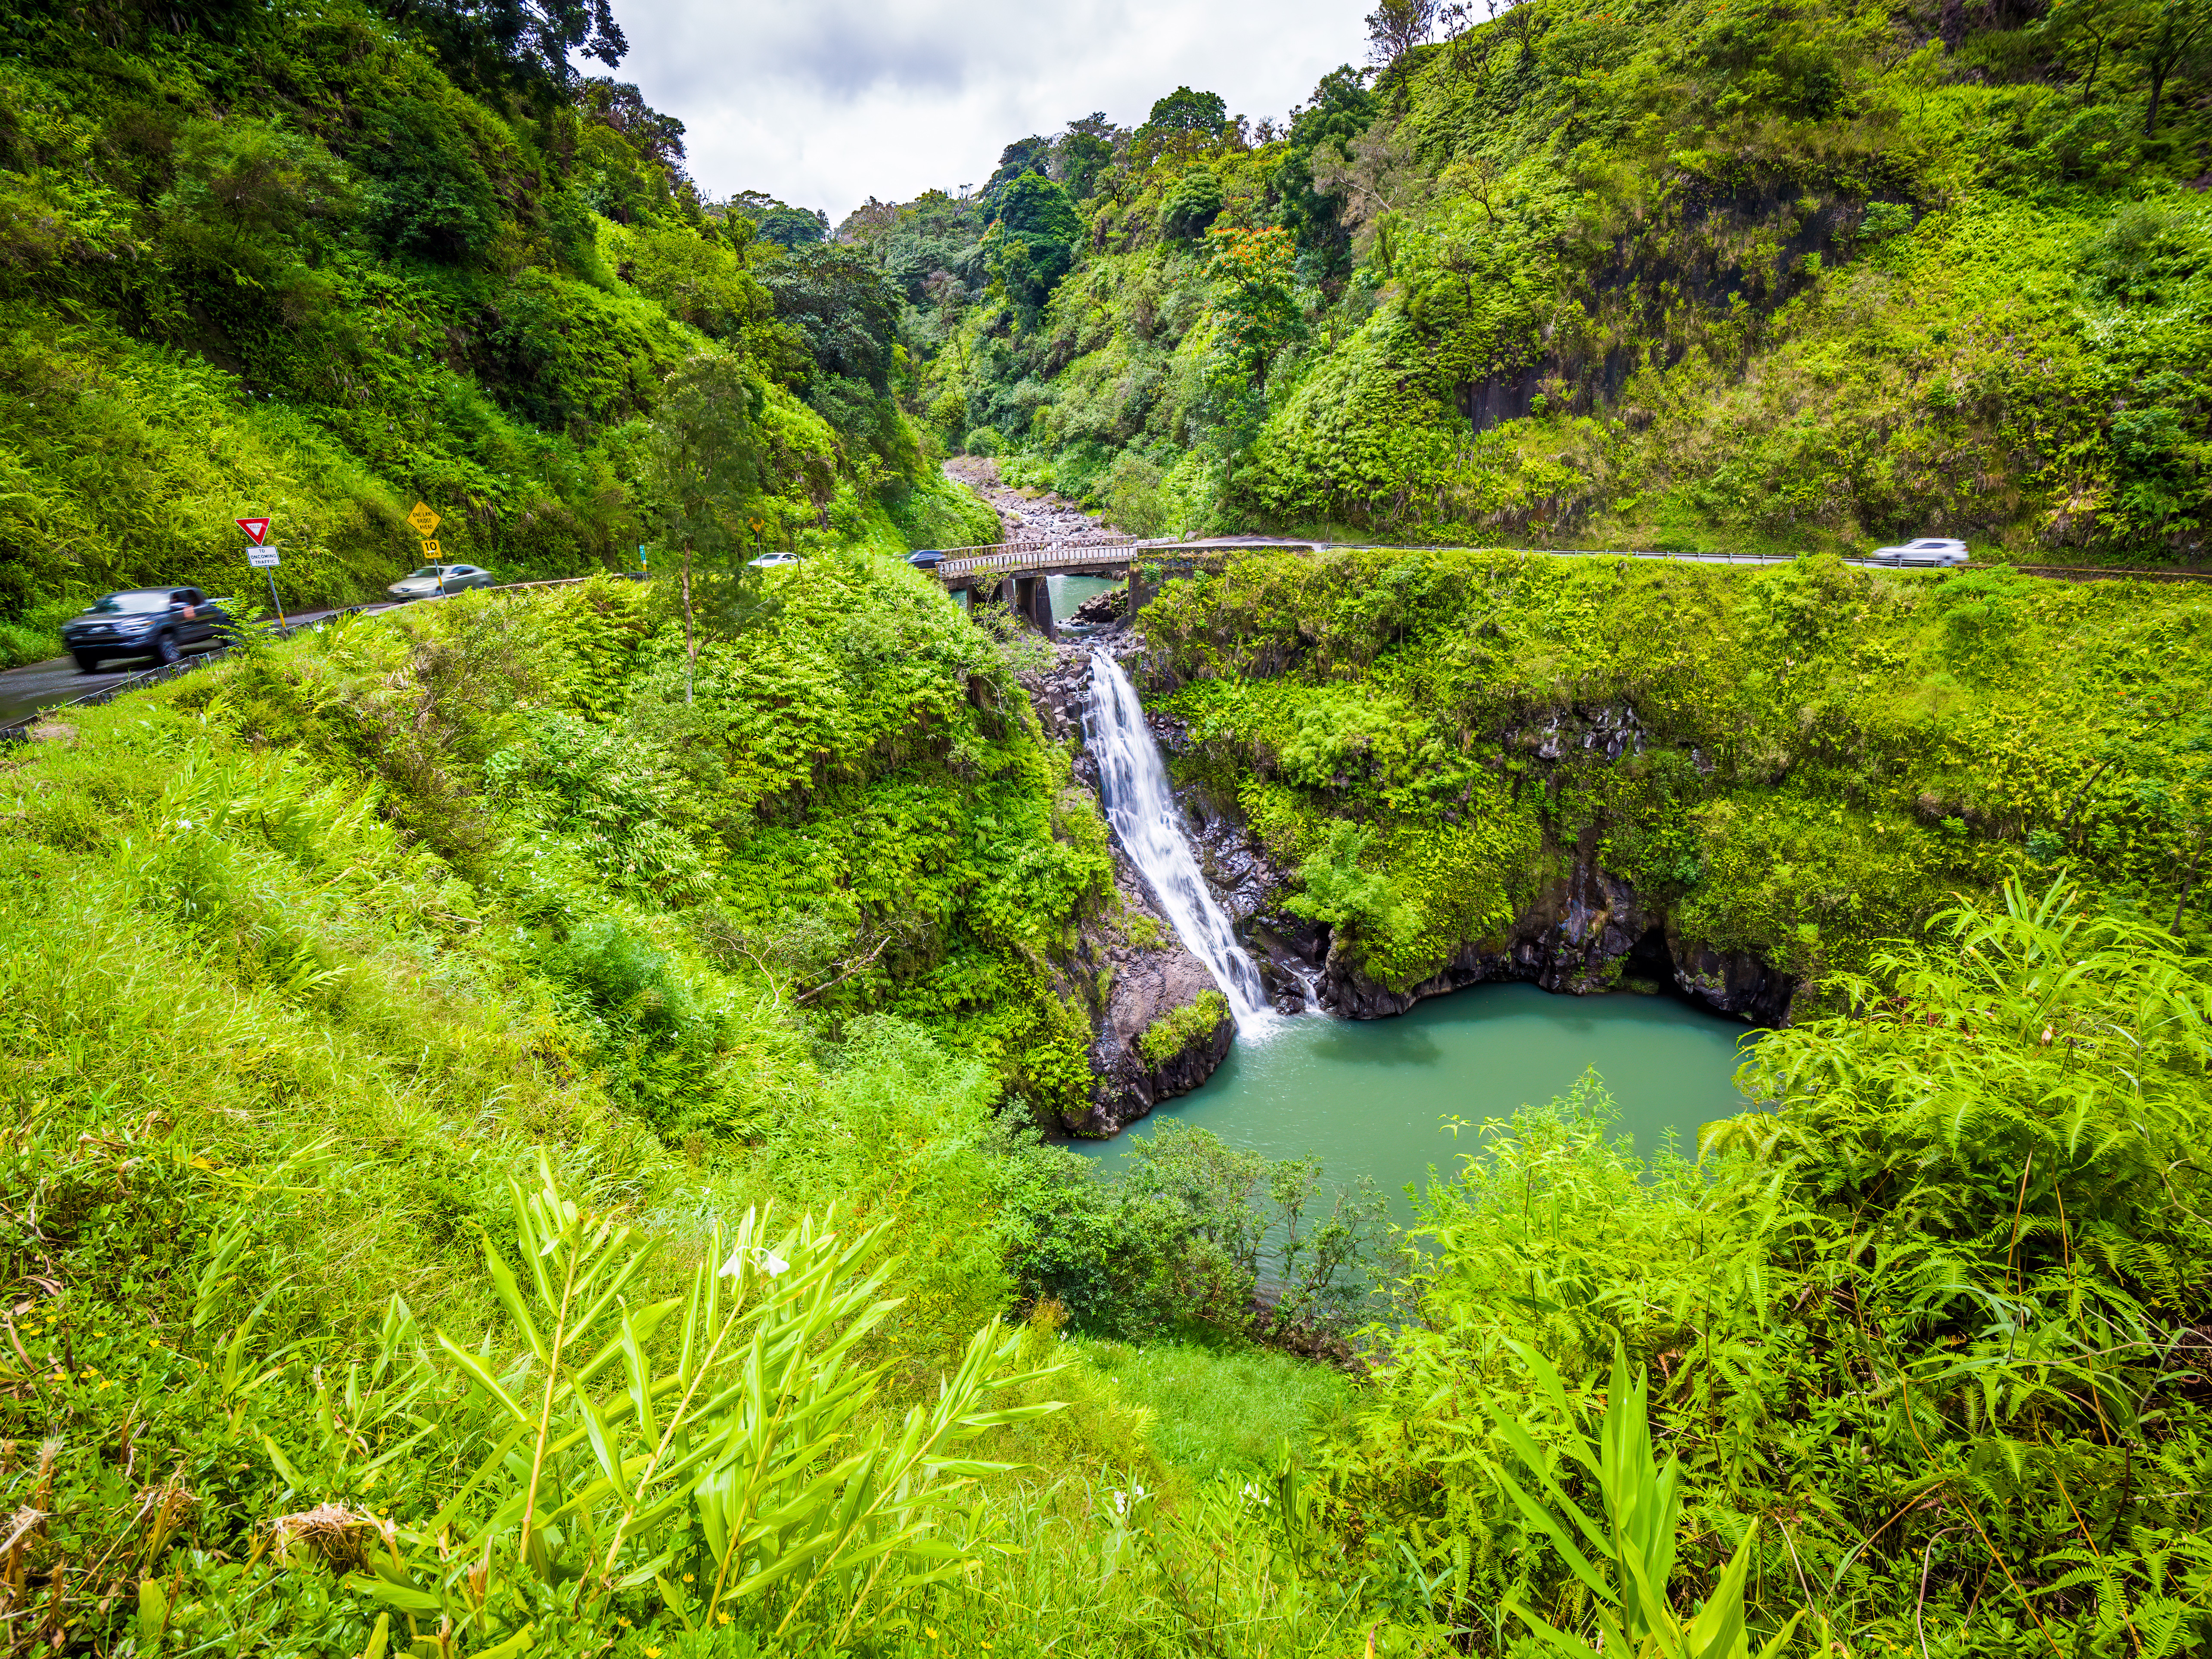 Maui, Hawaii Hana Highway - Wailua Iki Falls (Wailuaiki). Road to Hana connects Kahului to the town of Hana Over 59 bridges, 620 curves, tropical rainforest